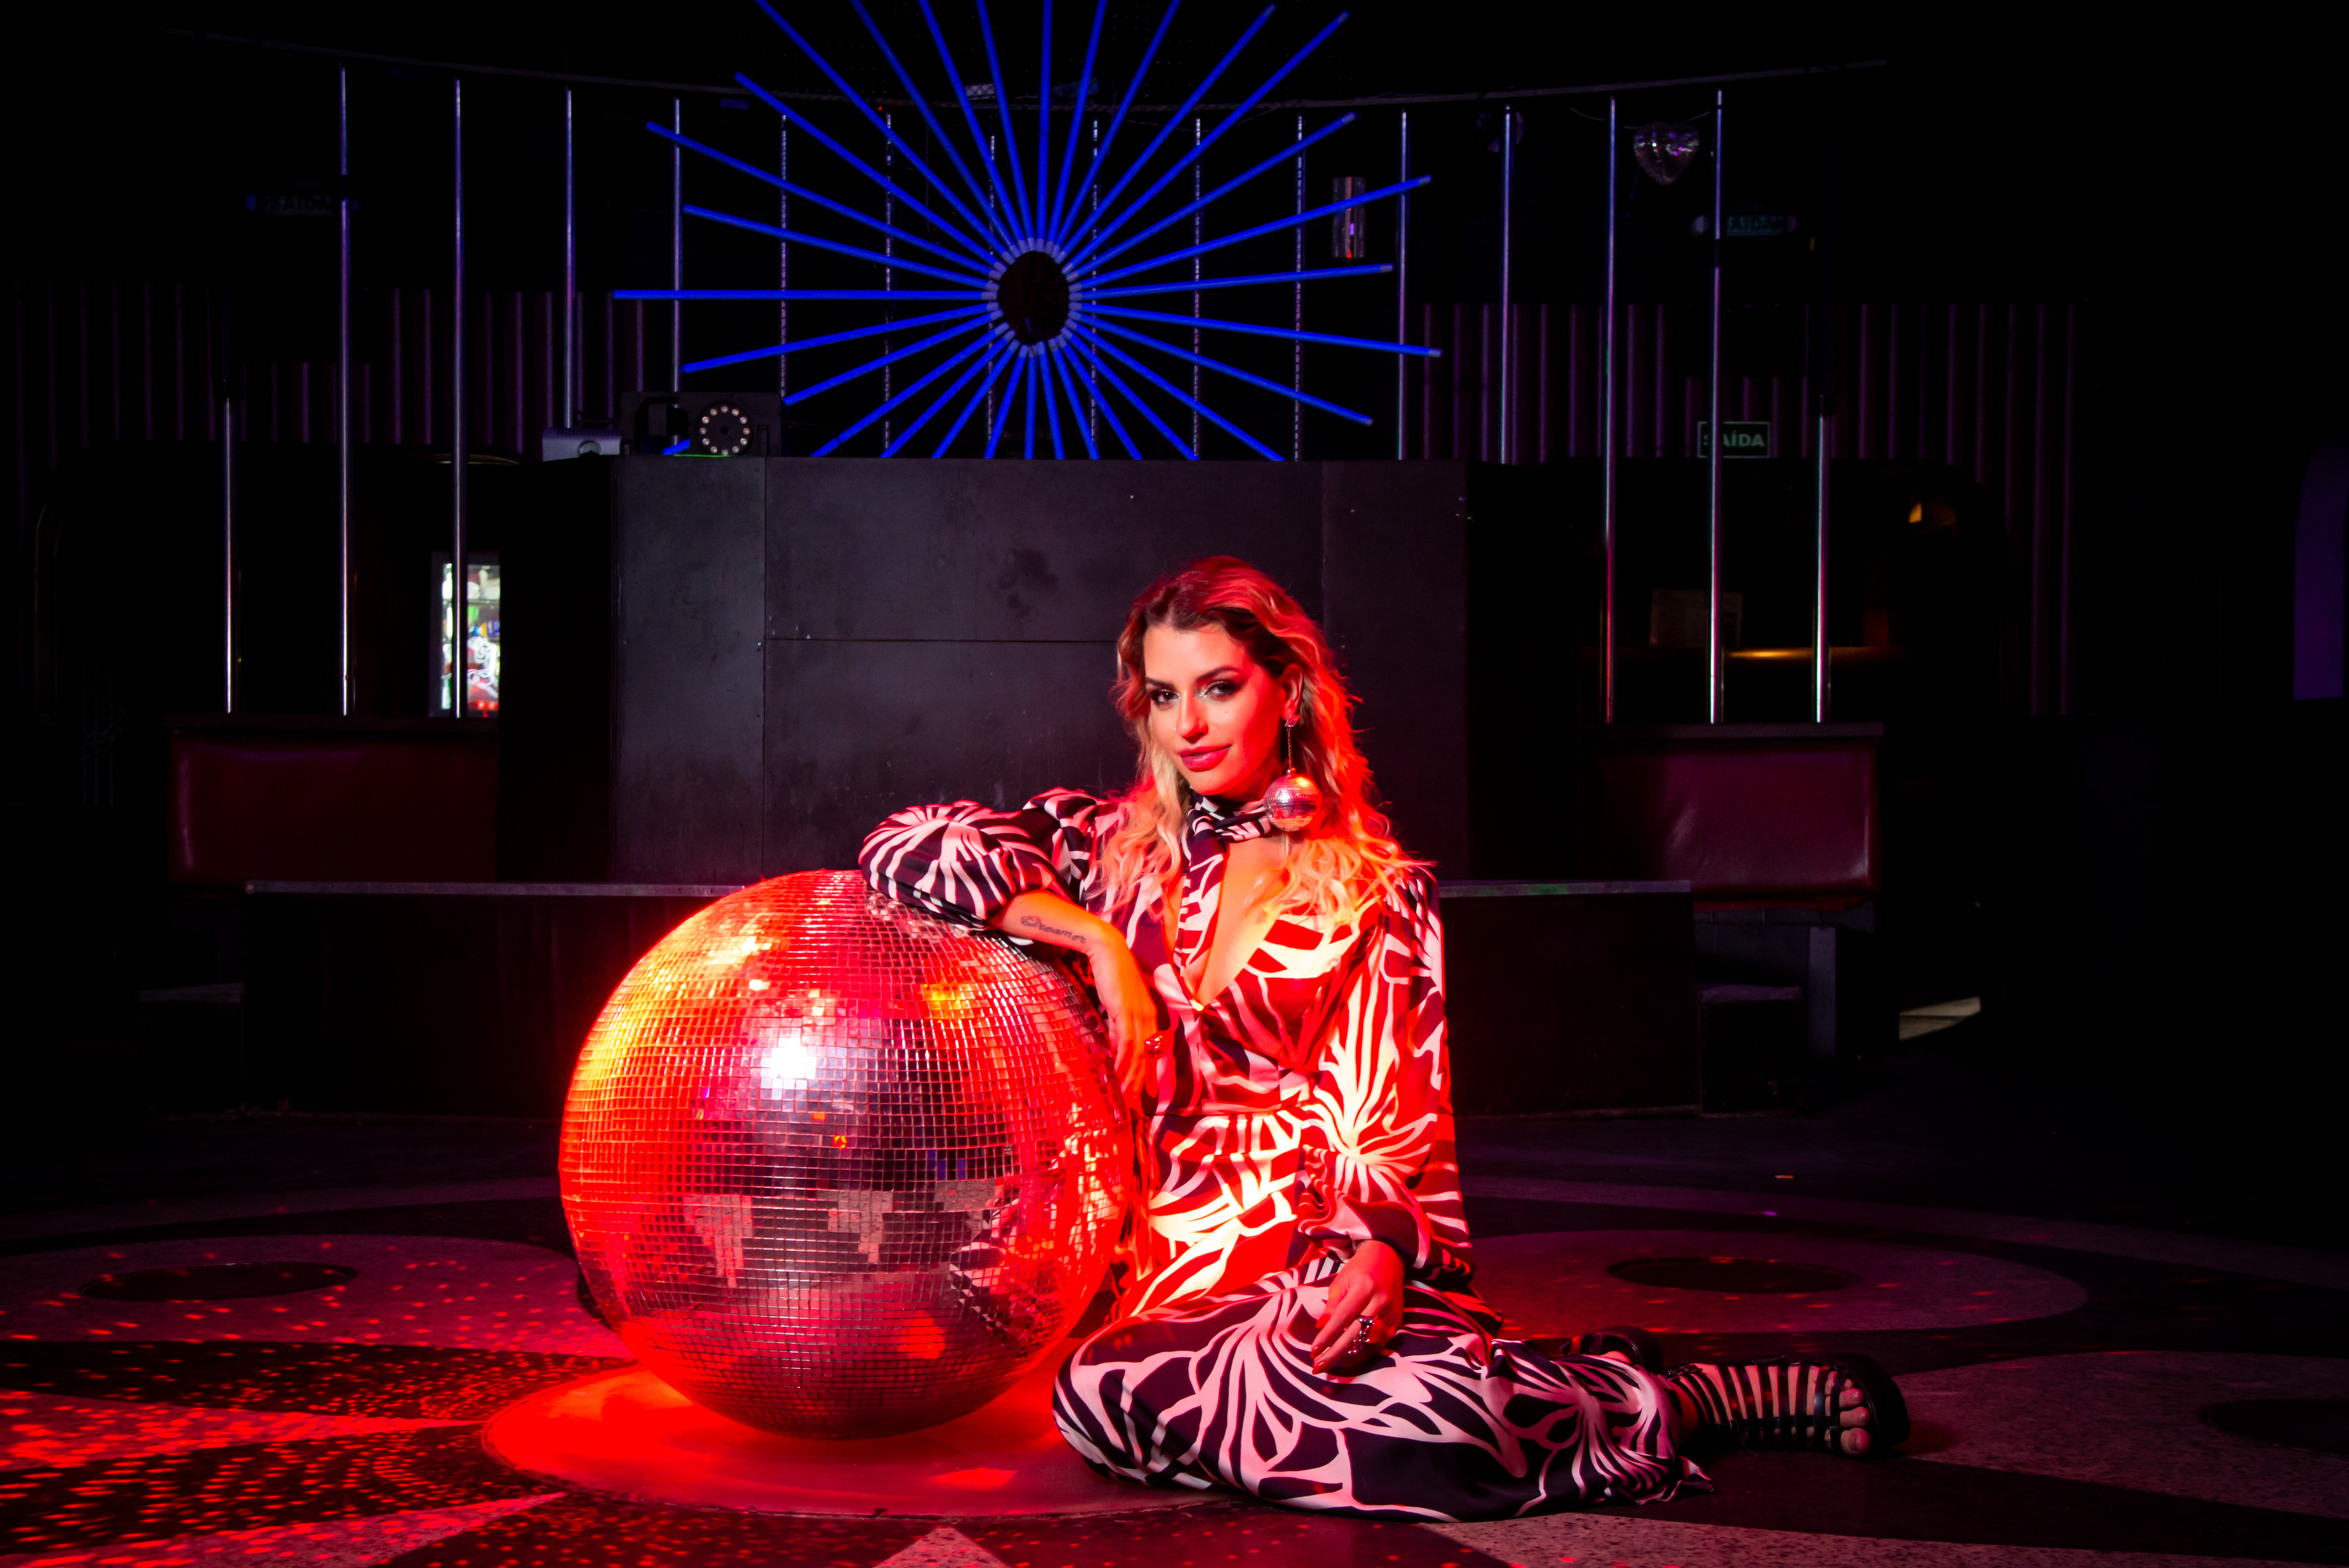 Lili Scott posa sentada e apoiada em bola de discoteca iluminada com luz vermelha. Ela veste um longo vestido estampado e está com um dos ombros encostado na bola.